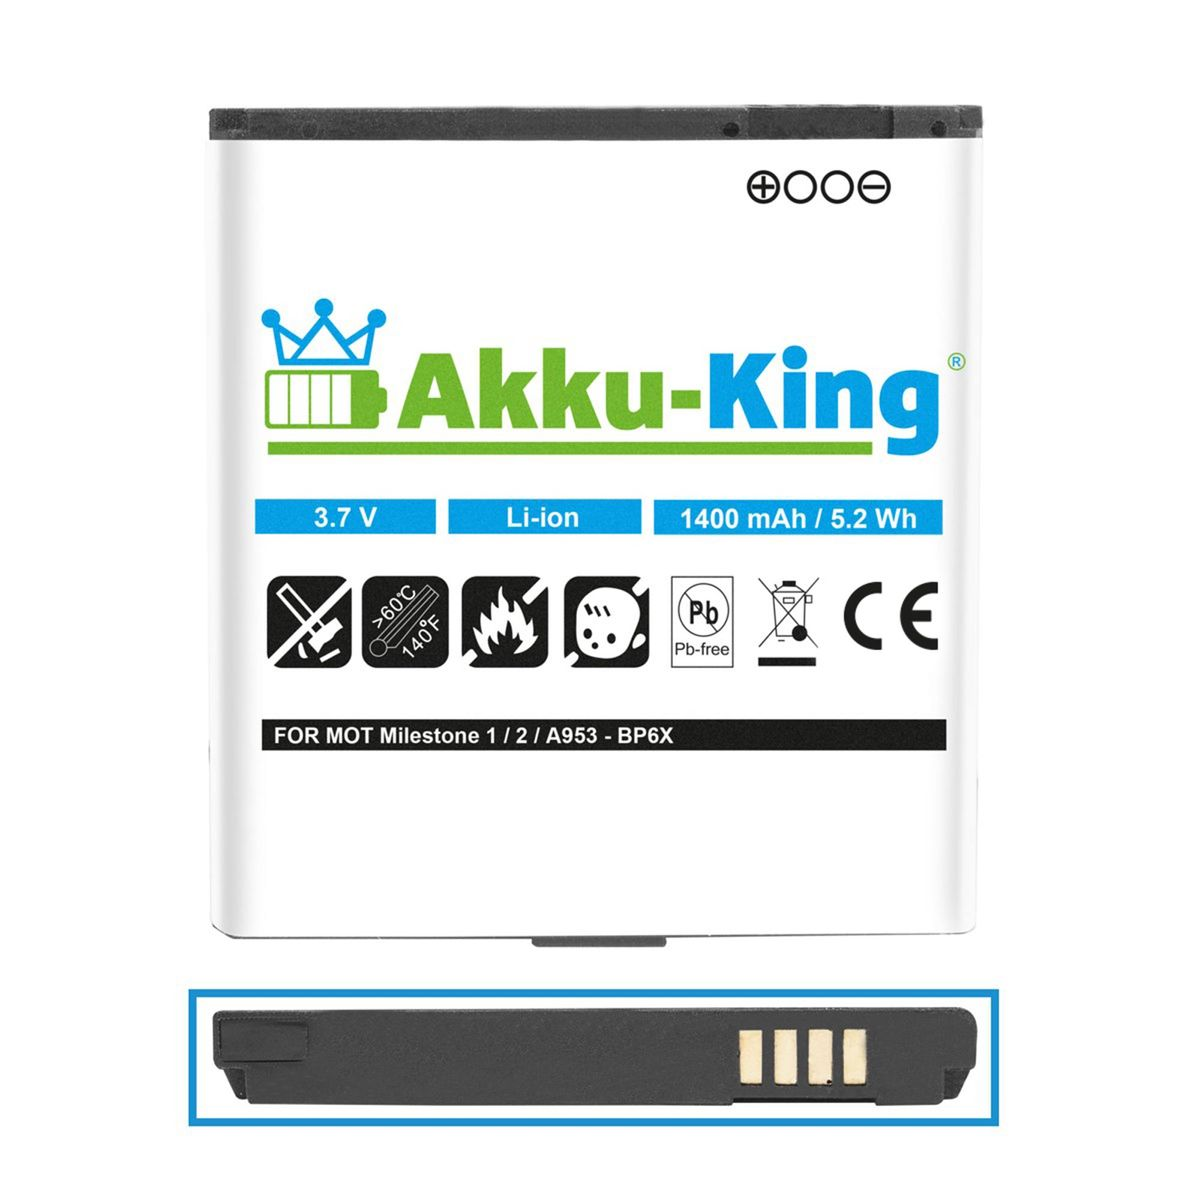 AKKU-KING Akku kompatibel mit Handy-Akku, BP6X 1400mAh Motorola Li-Ion 3.7 Volt